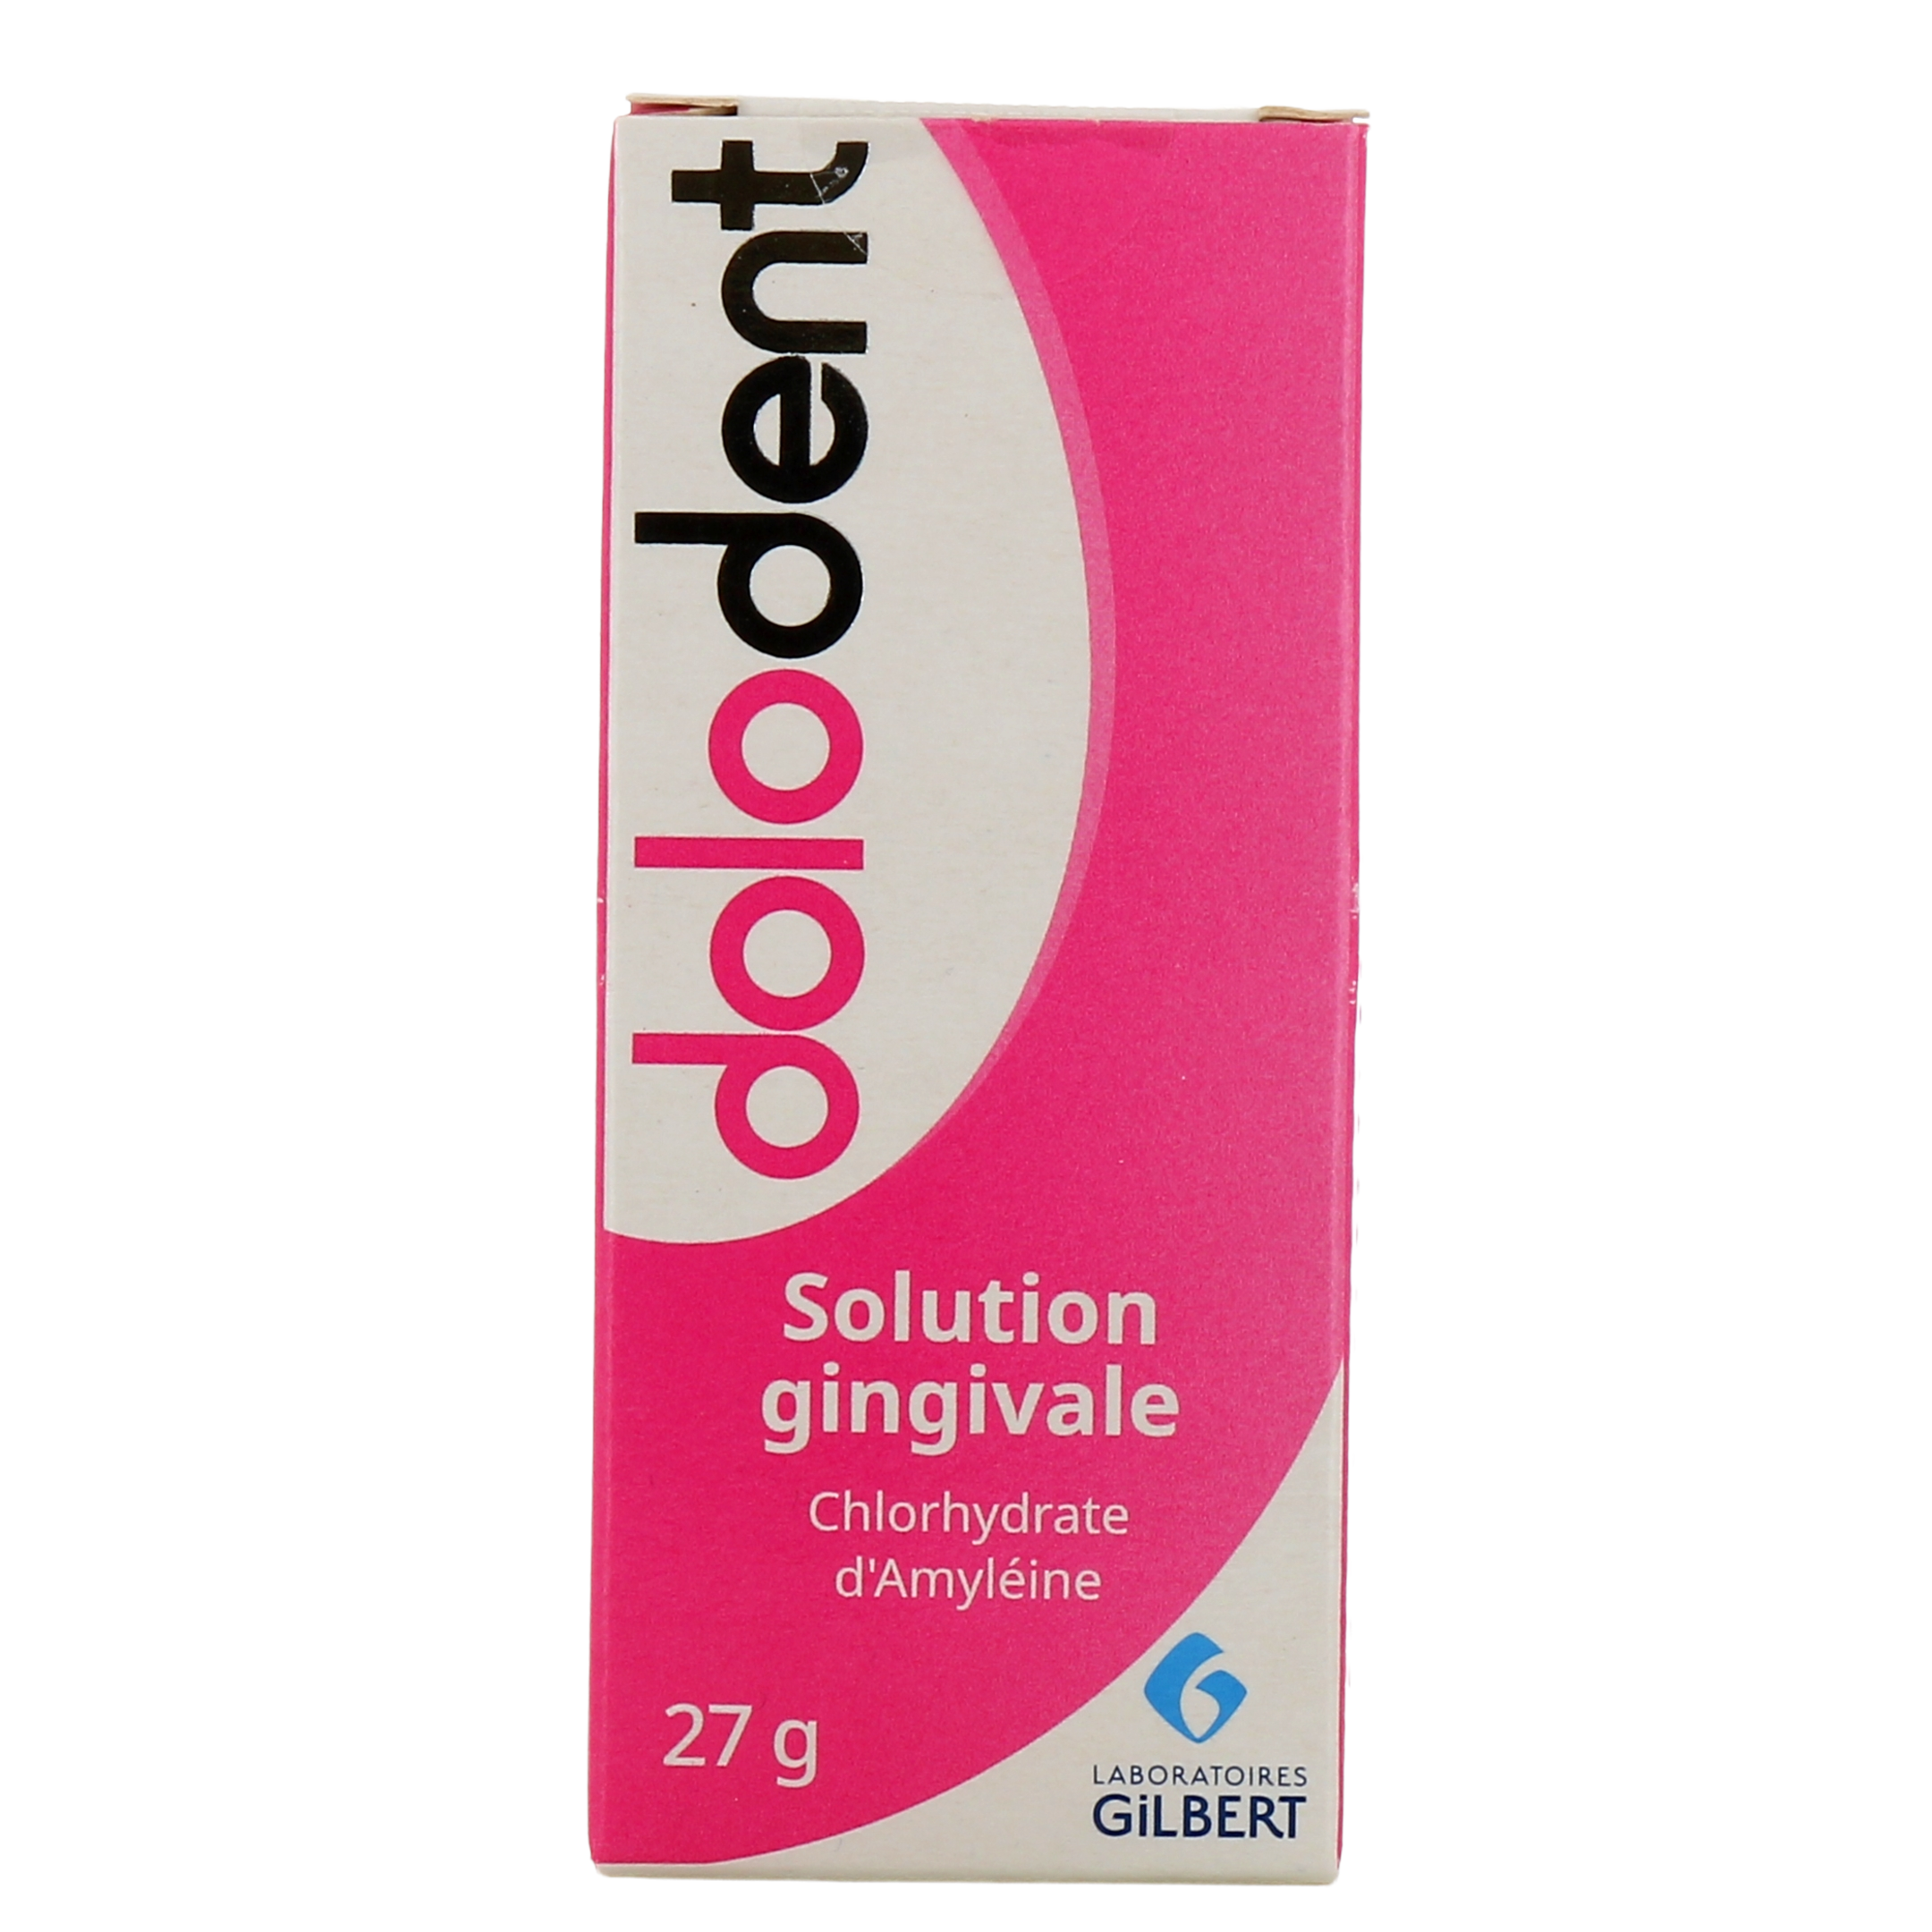 DOLODENT Solution gingivale - 27g 27.0 g - Pharmacie Opéra